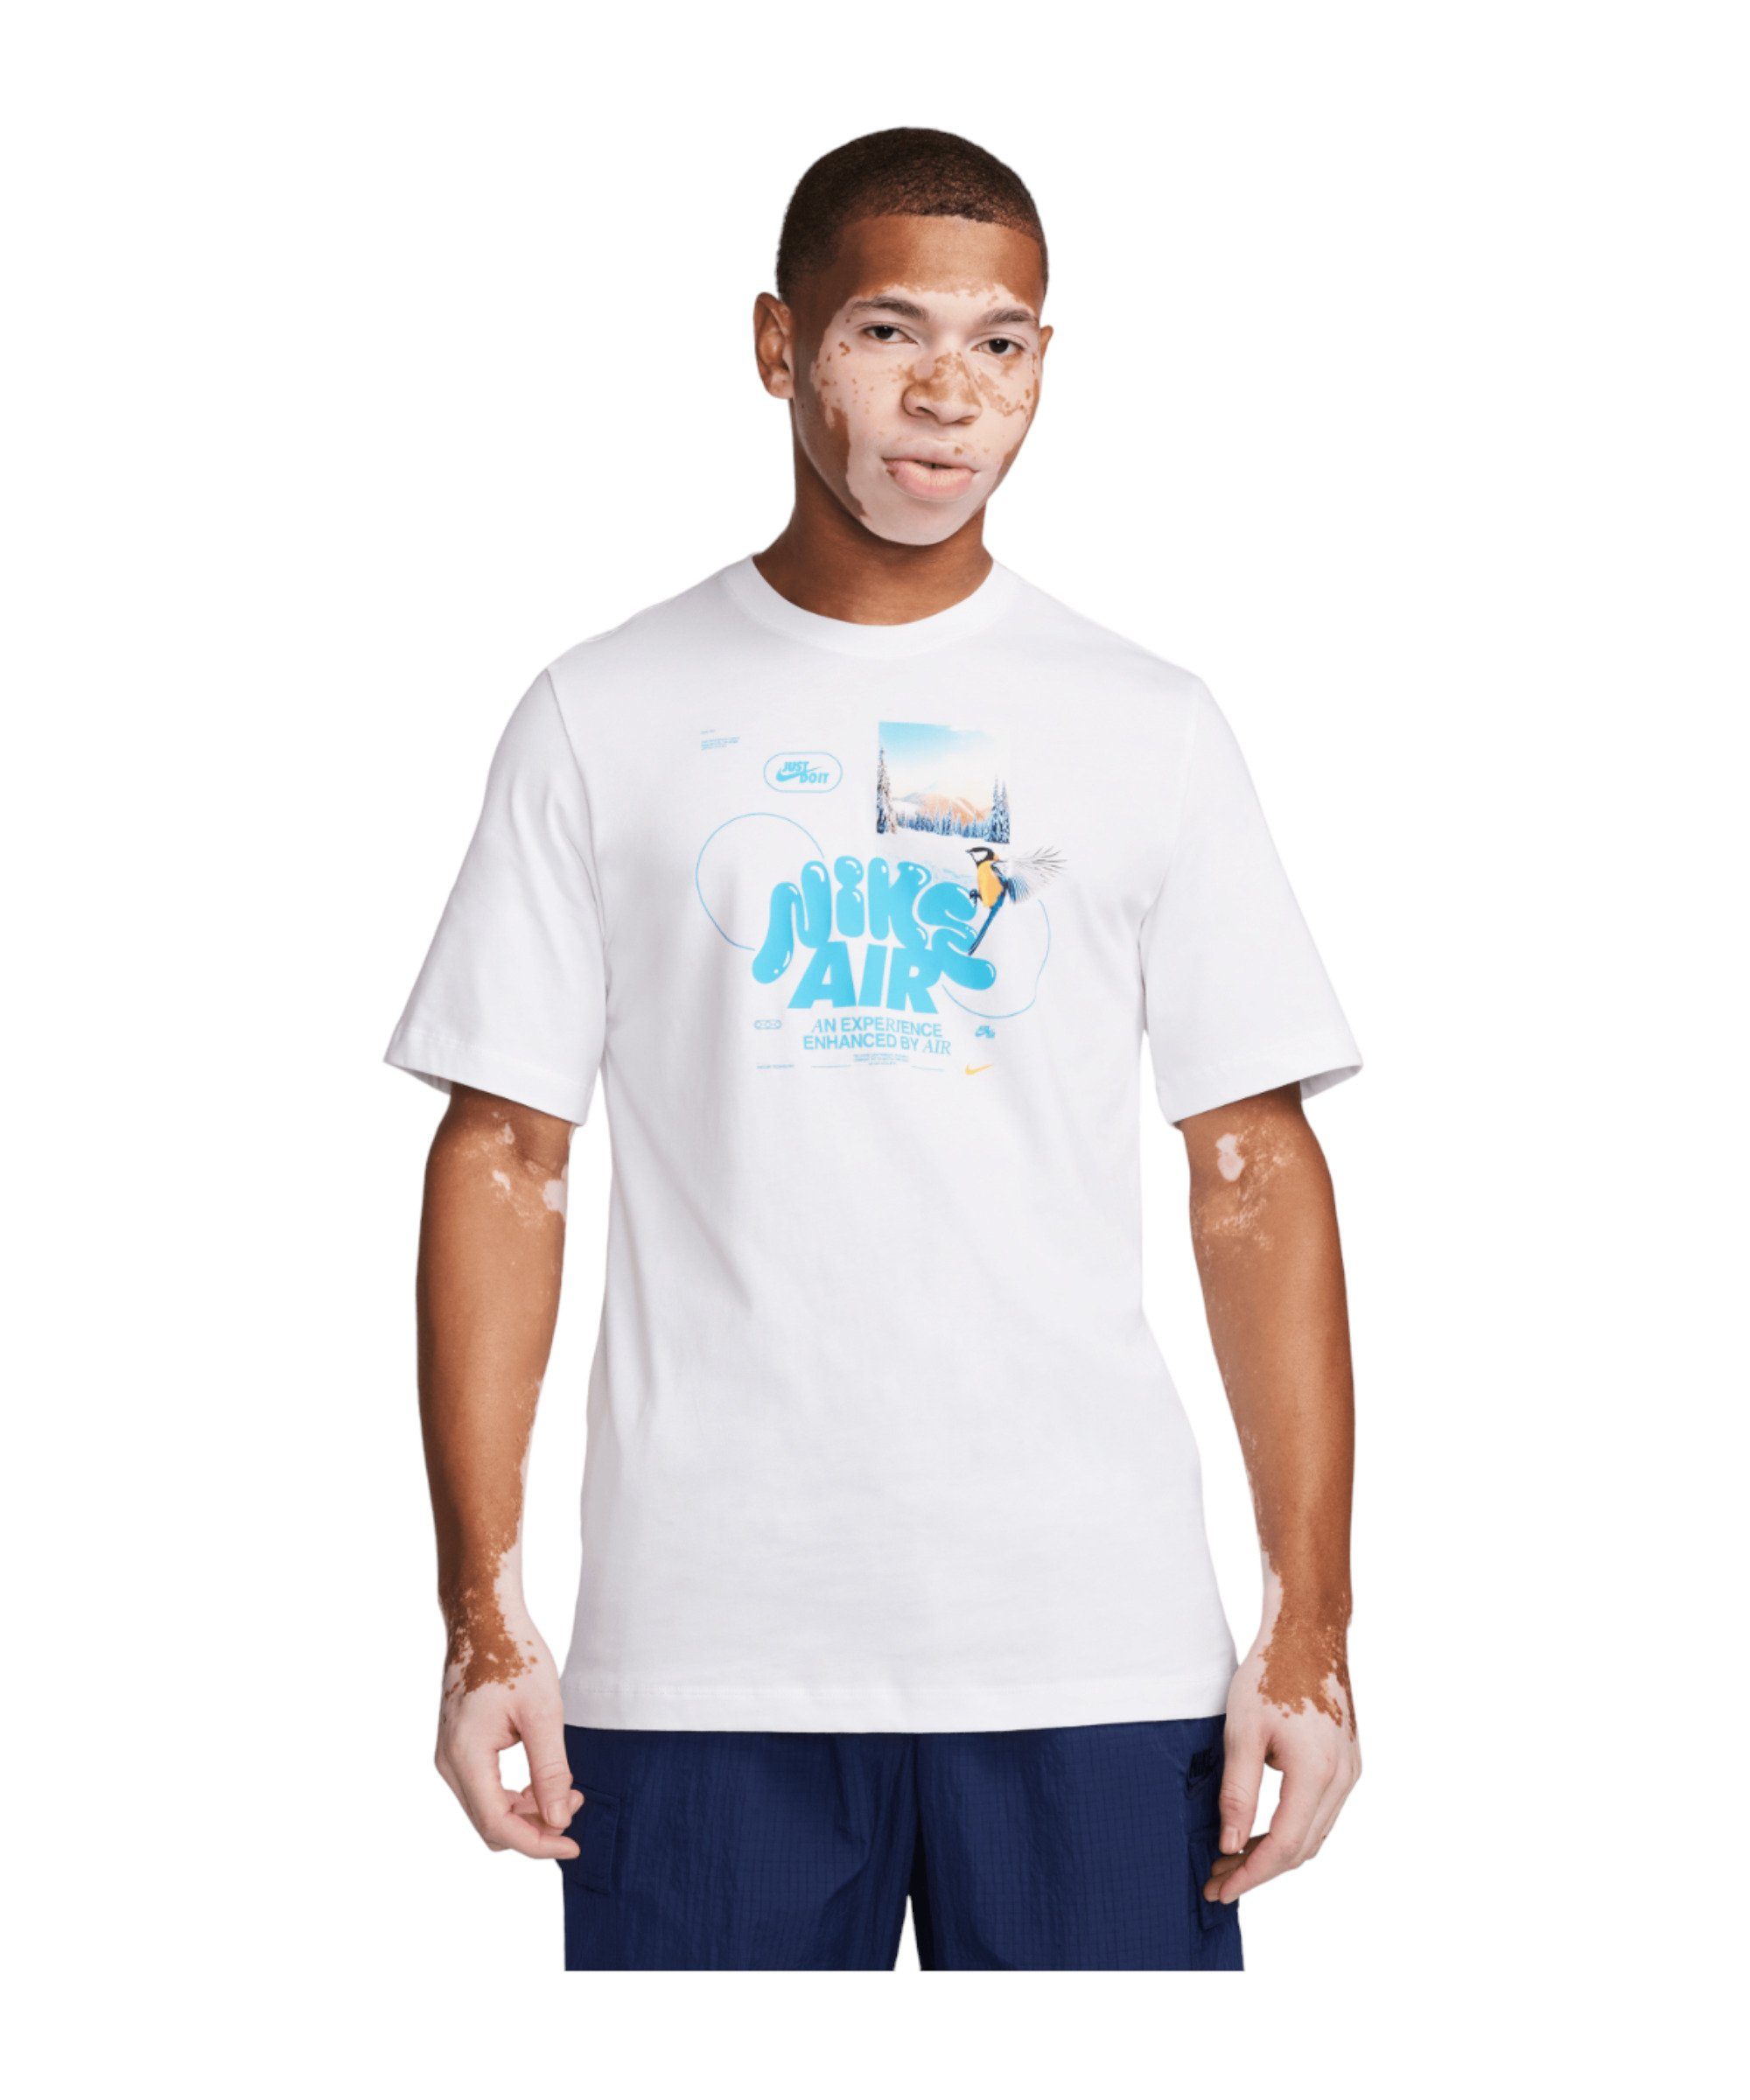 T-Shirt weiss default Nike T-Shirt